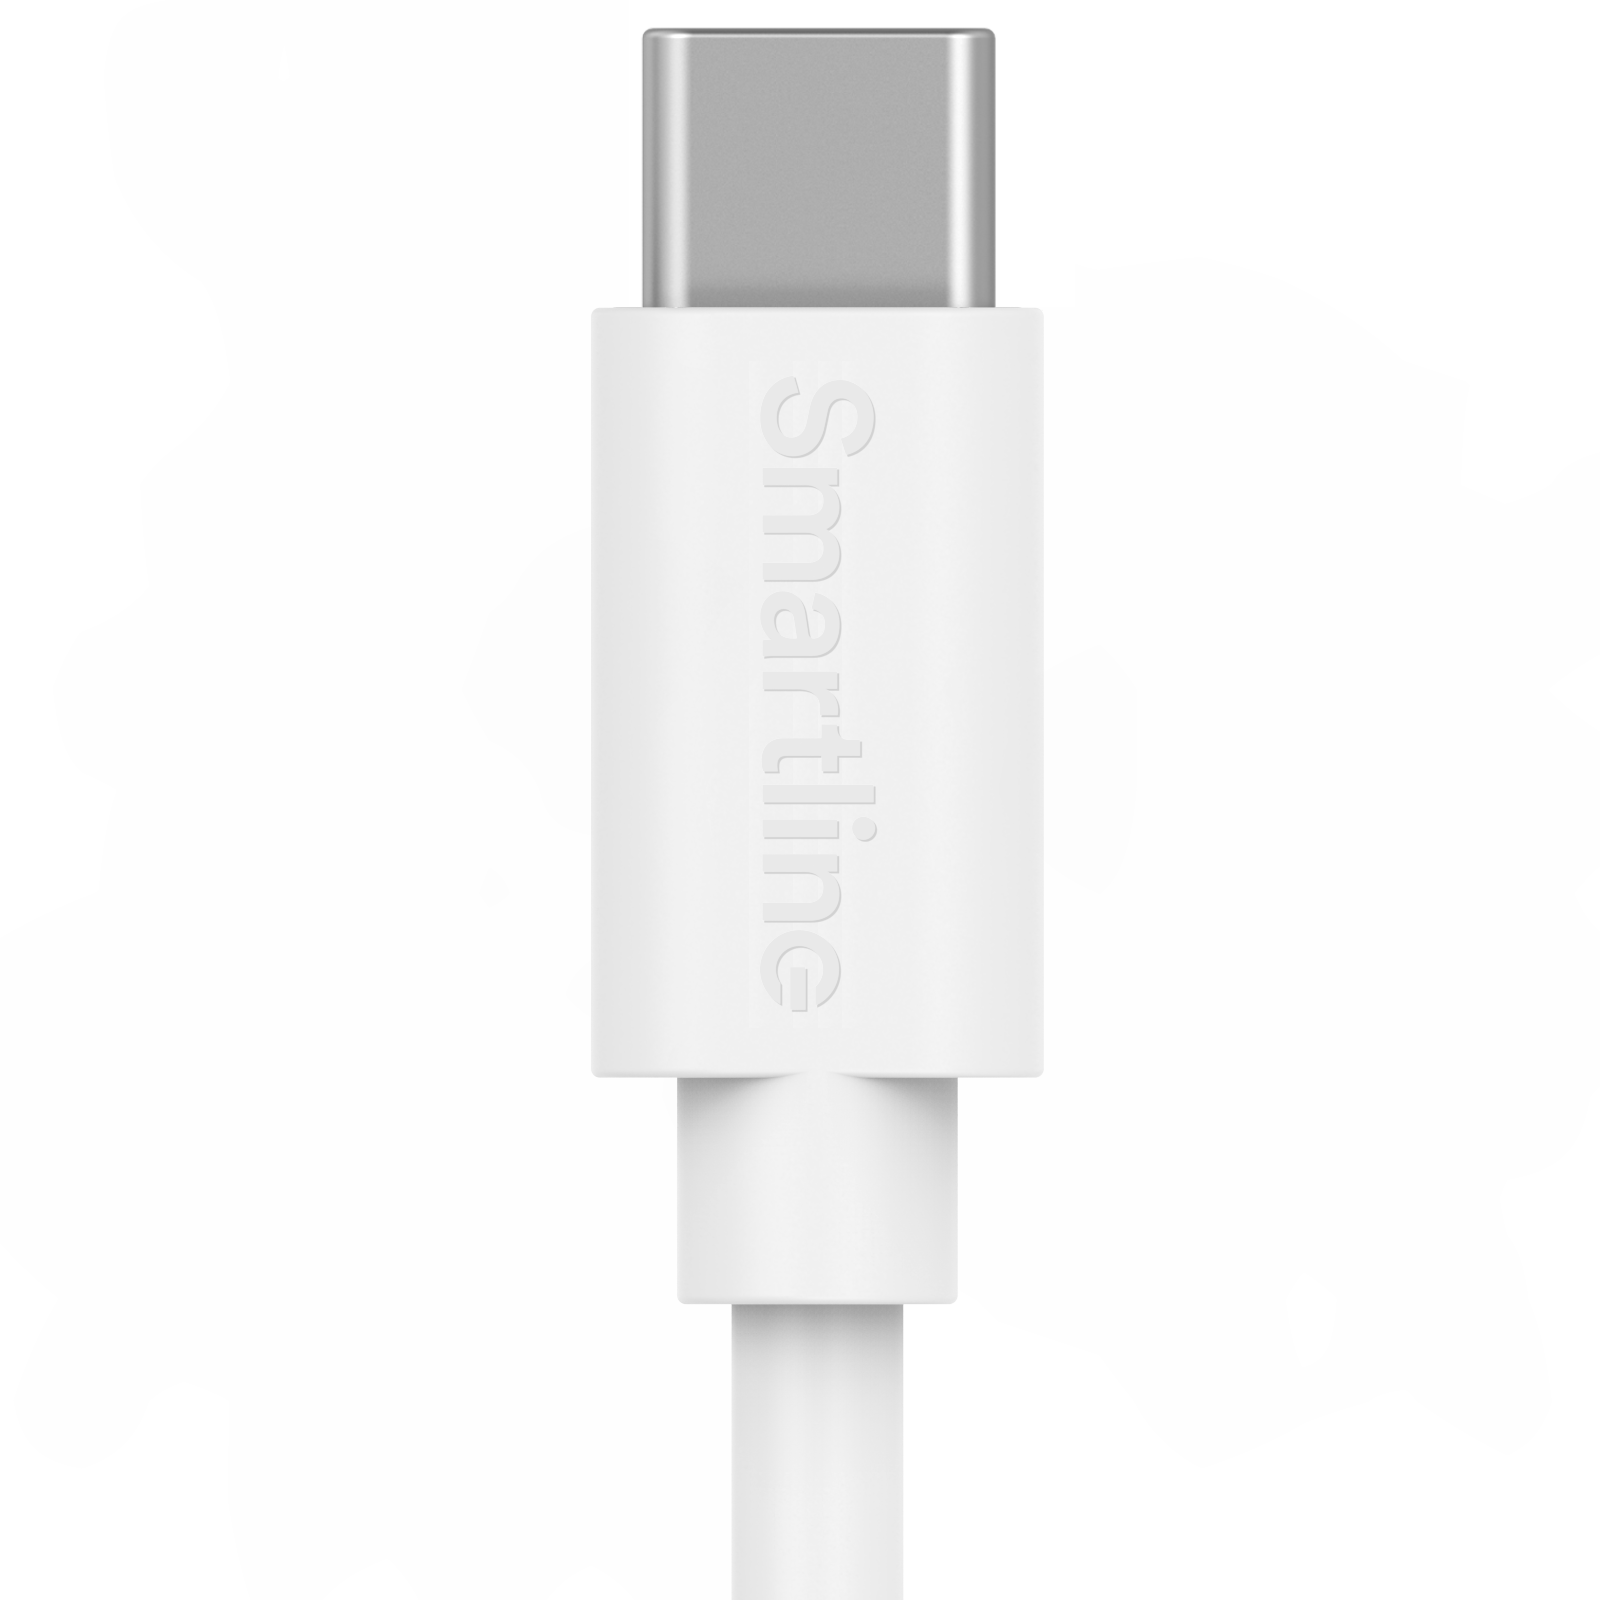 Chargeur complet de voiture - Câble USB-C de 1m et chargeur USB-C - Smartline